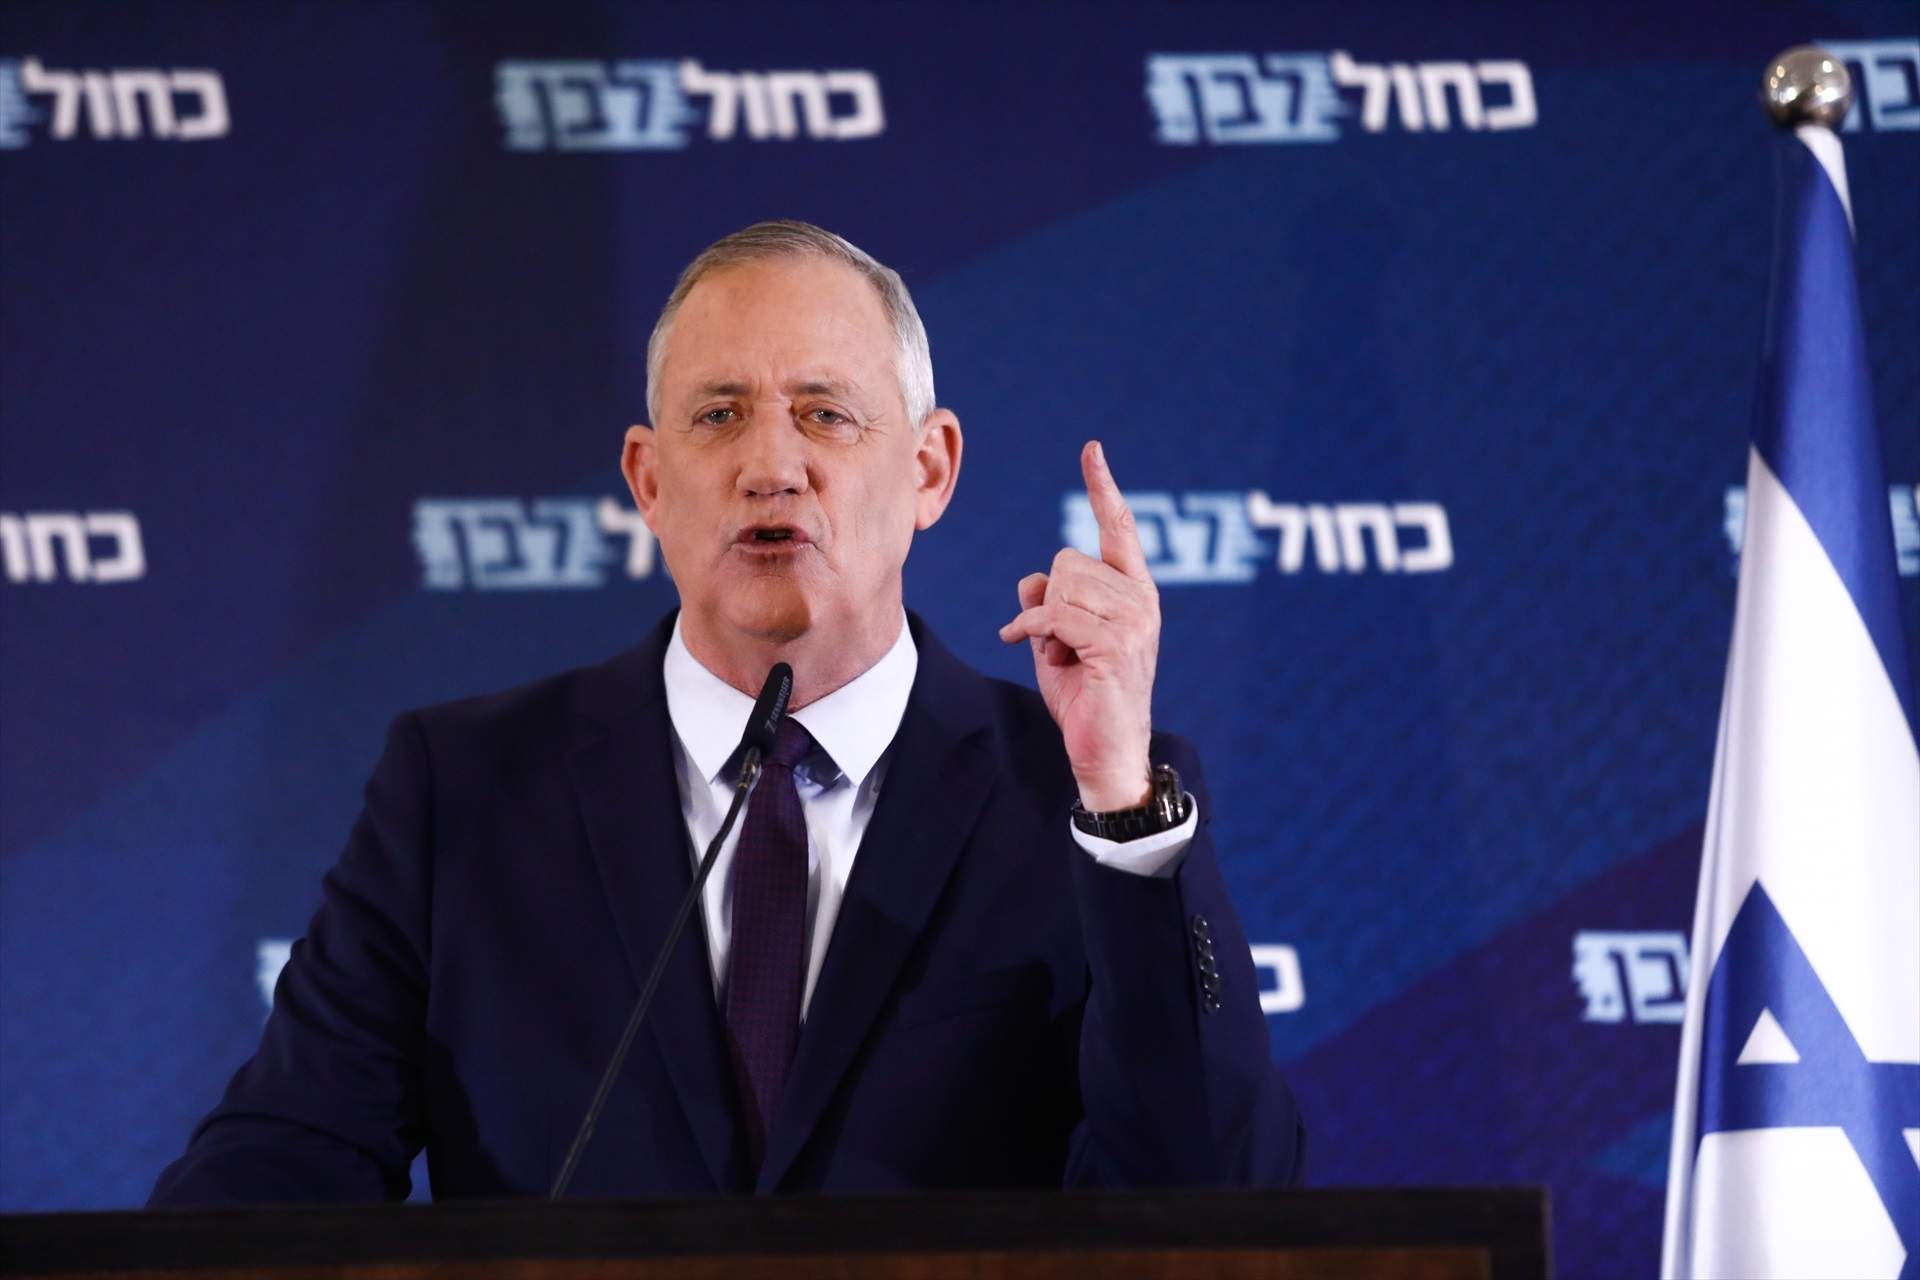 Dimite el ministro del Gabinete de Guerra israelí por la gestión de Netanyahu y pide elecciones